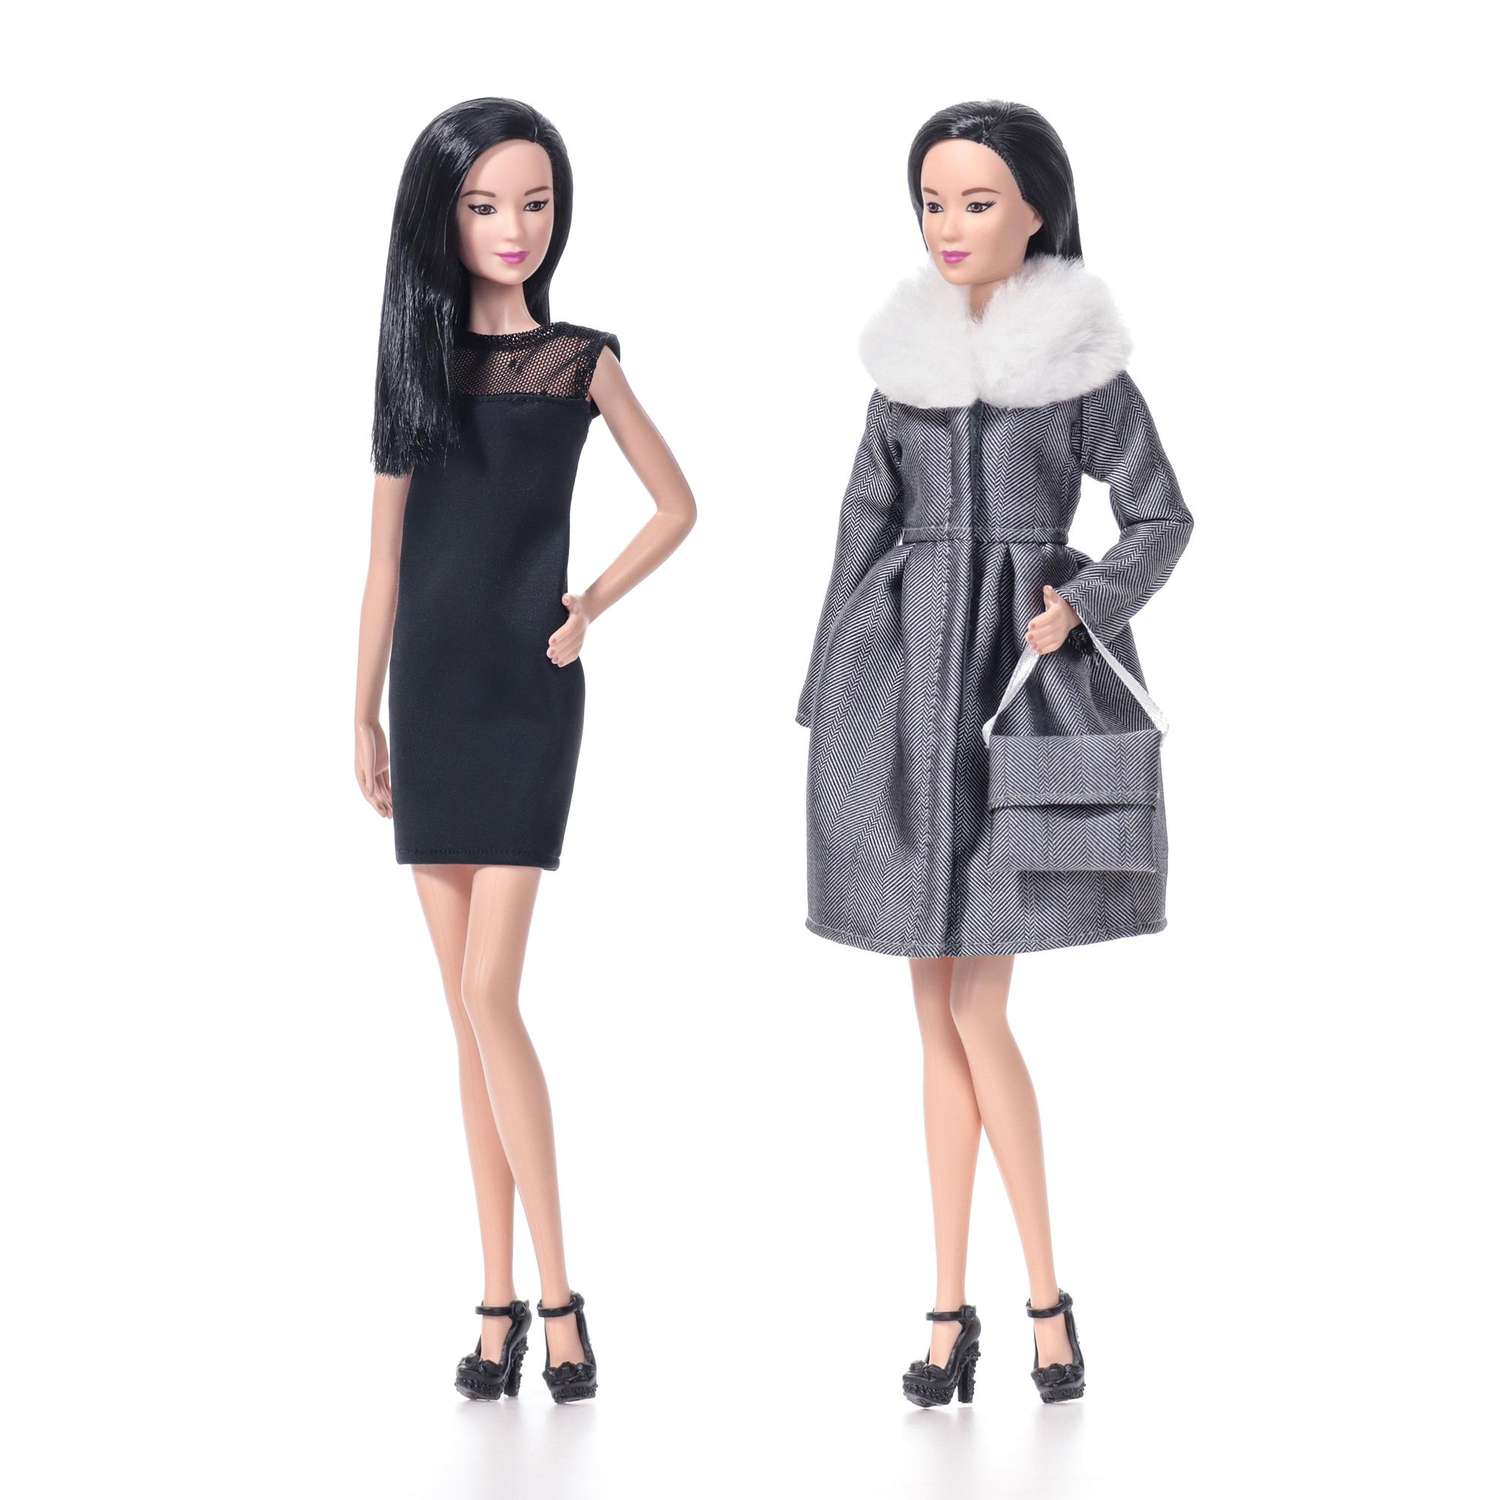 Одежда для кукол VIANA типа Барби 125.07.9 черное платье и серое пальто с сумочкой 1257.9 - фото 2